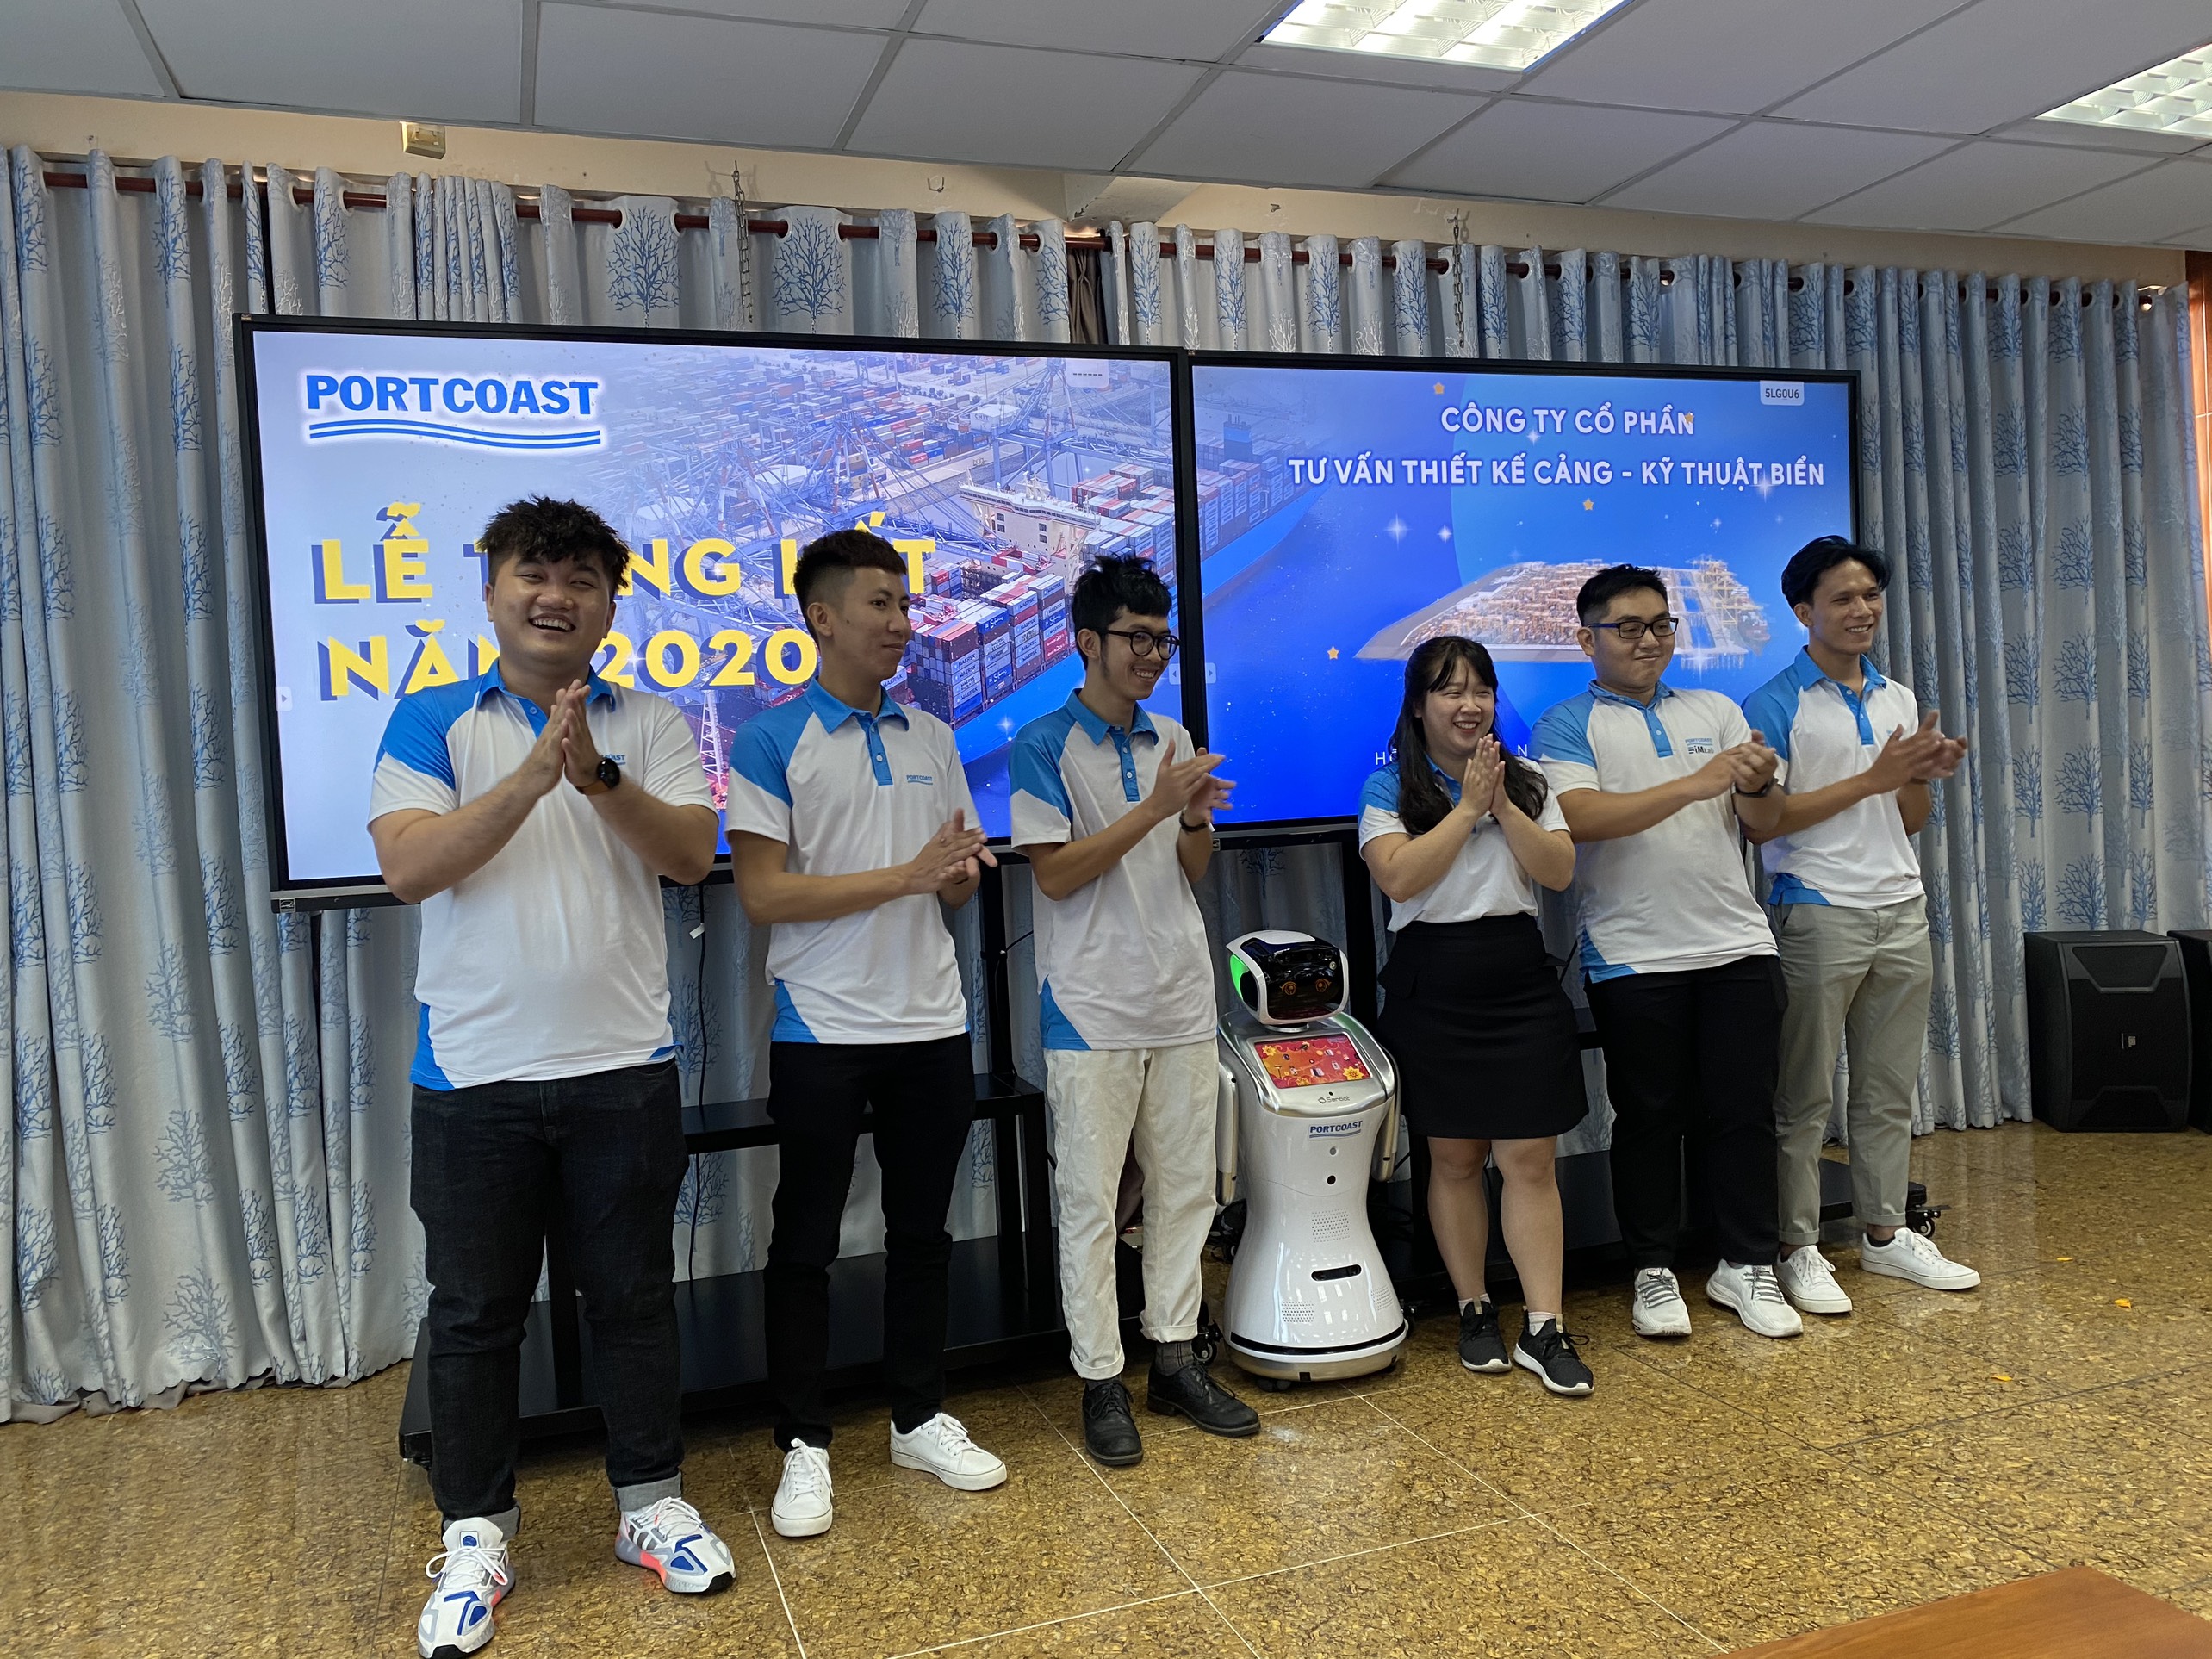 Tùng Việt chuyên cho thuê Robot tại các sự kiện